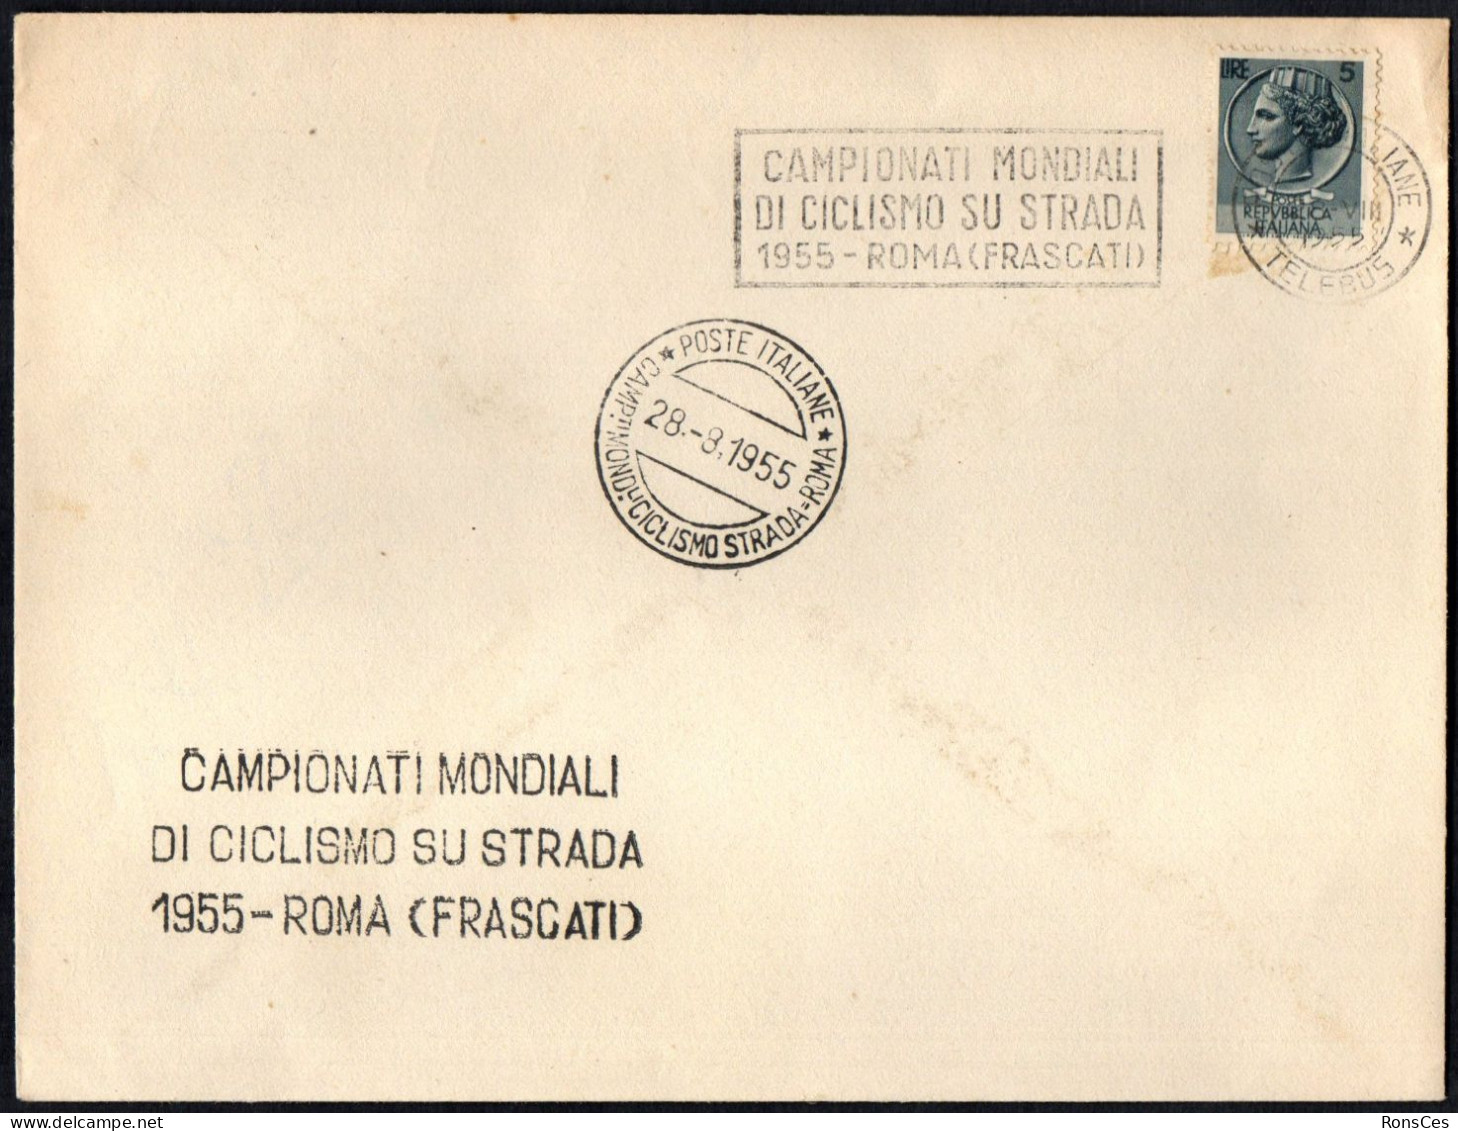 CYCLING - ITALIA ROMA 1955 - CAMPIONATI MONDIALI DI CICLISMO SU STRADA (FRASCATI) - A - Cycling